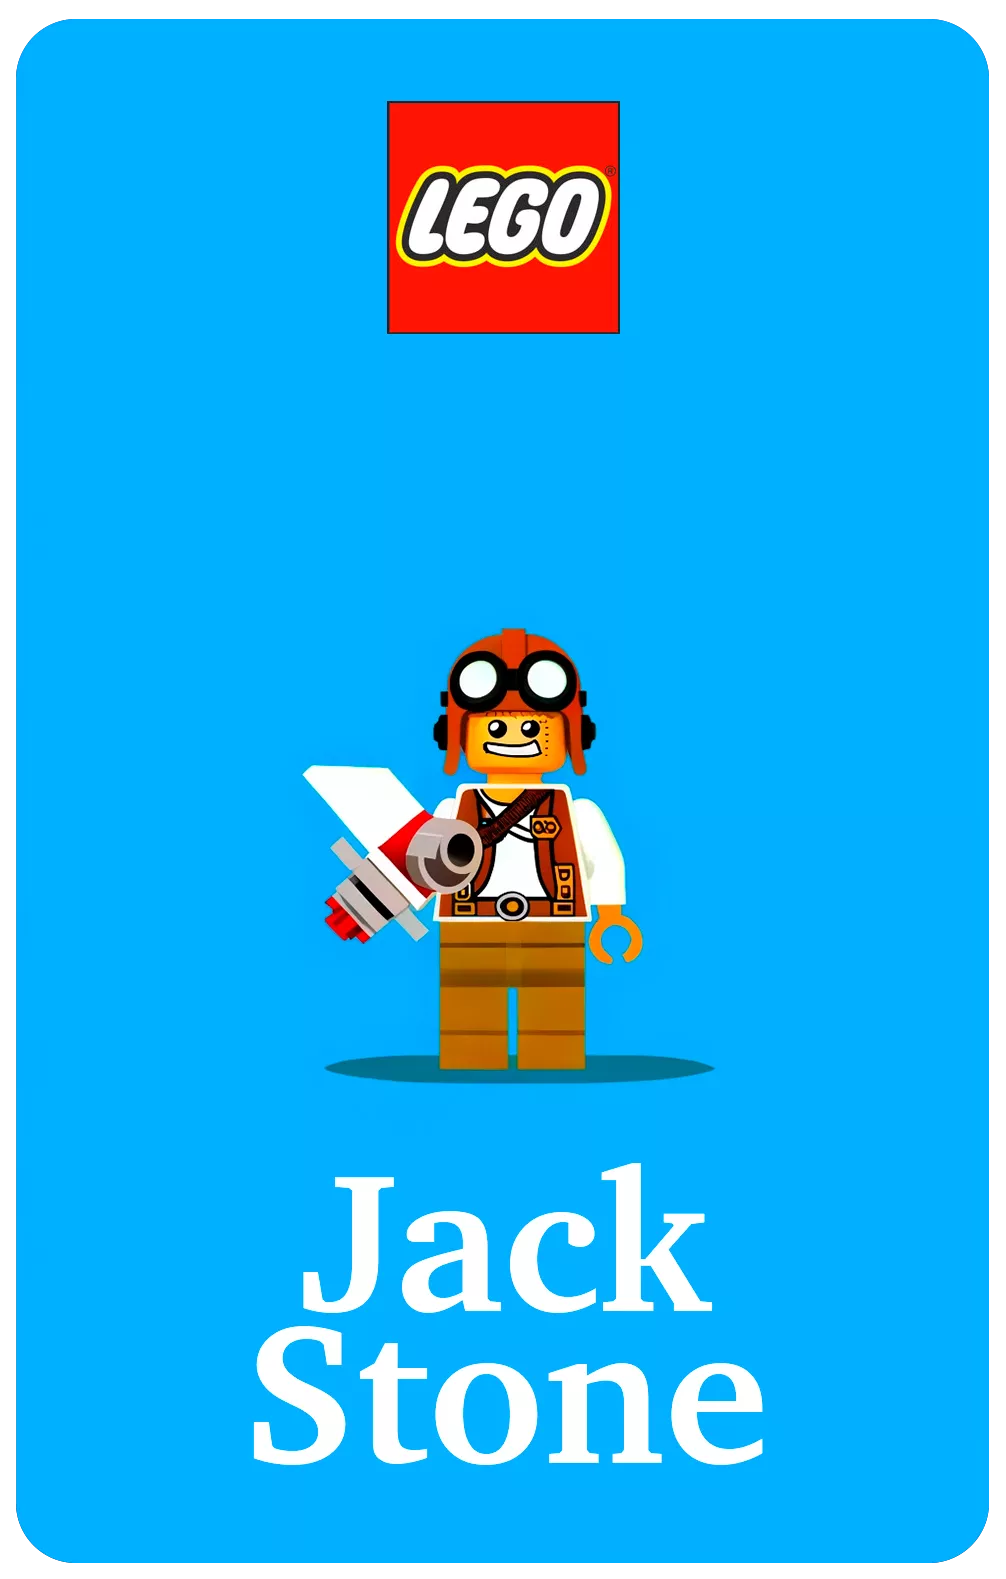 LEGO Jack Stone